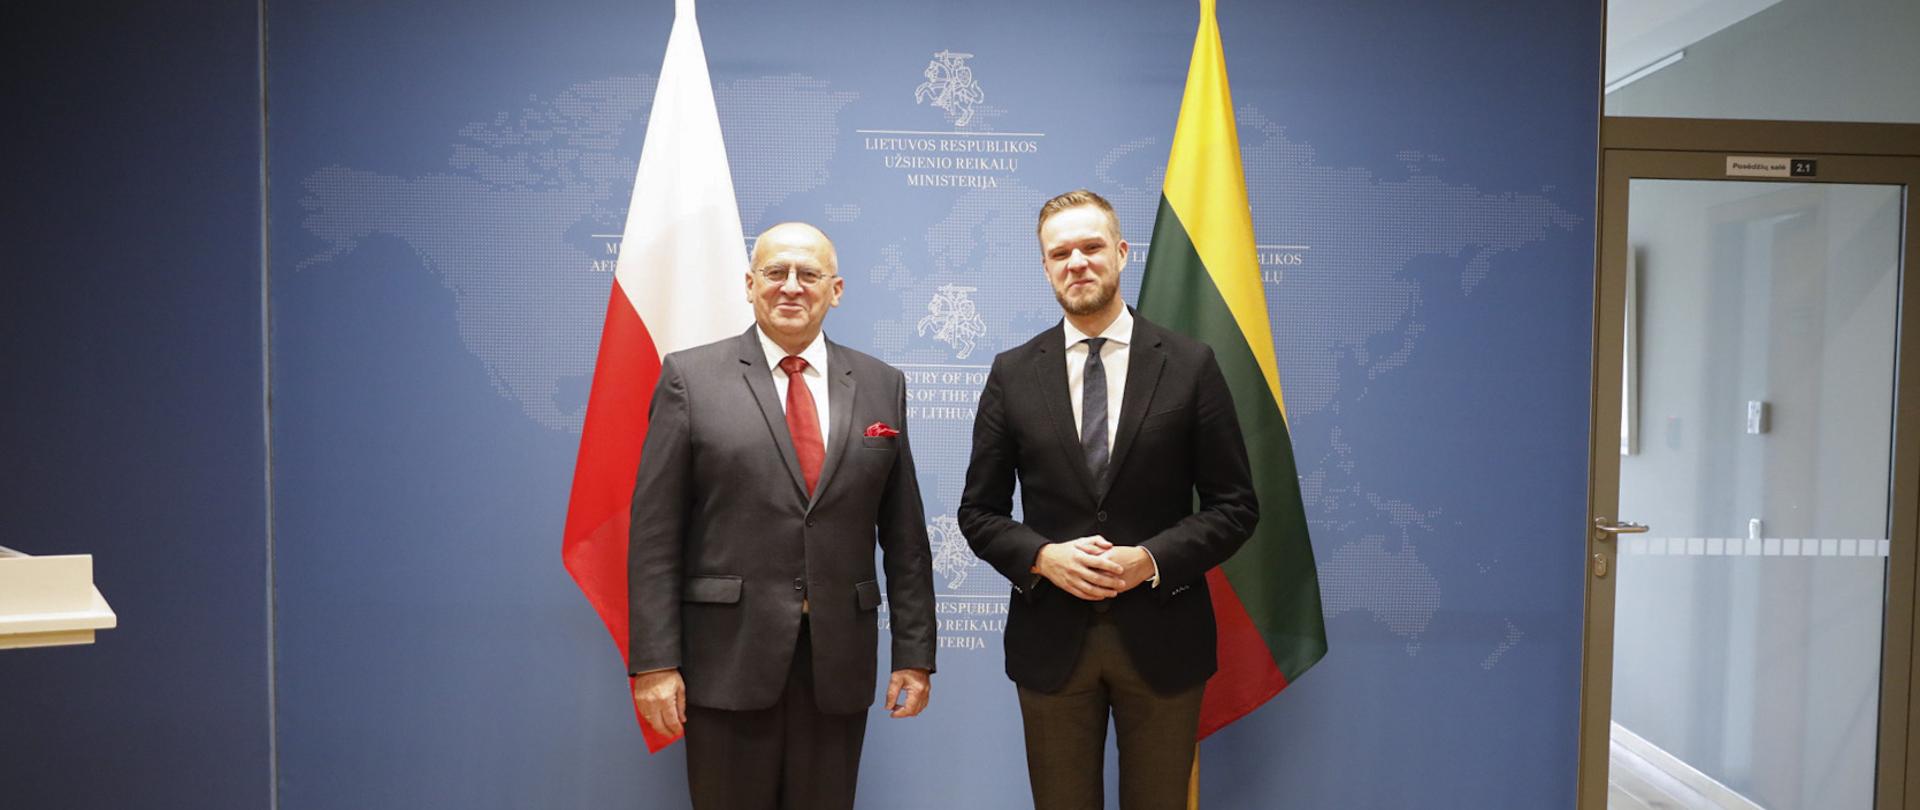 Minister G. Landsbergis greets minister Z. Rau